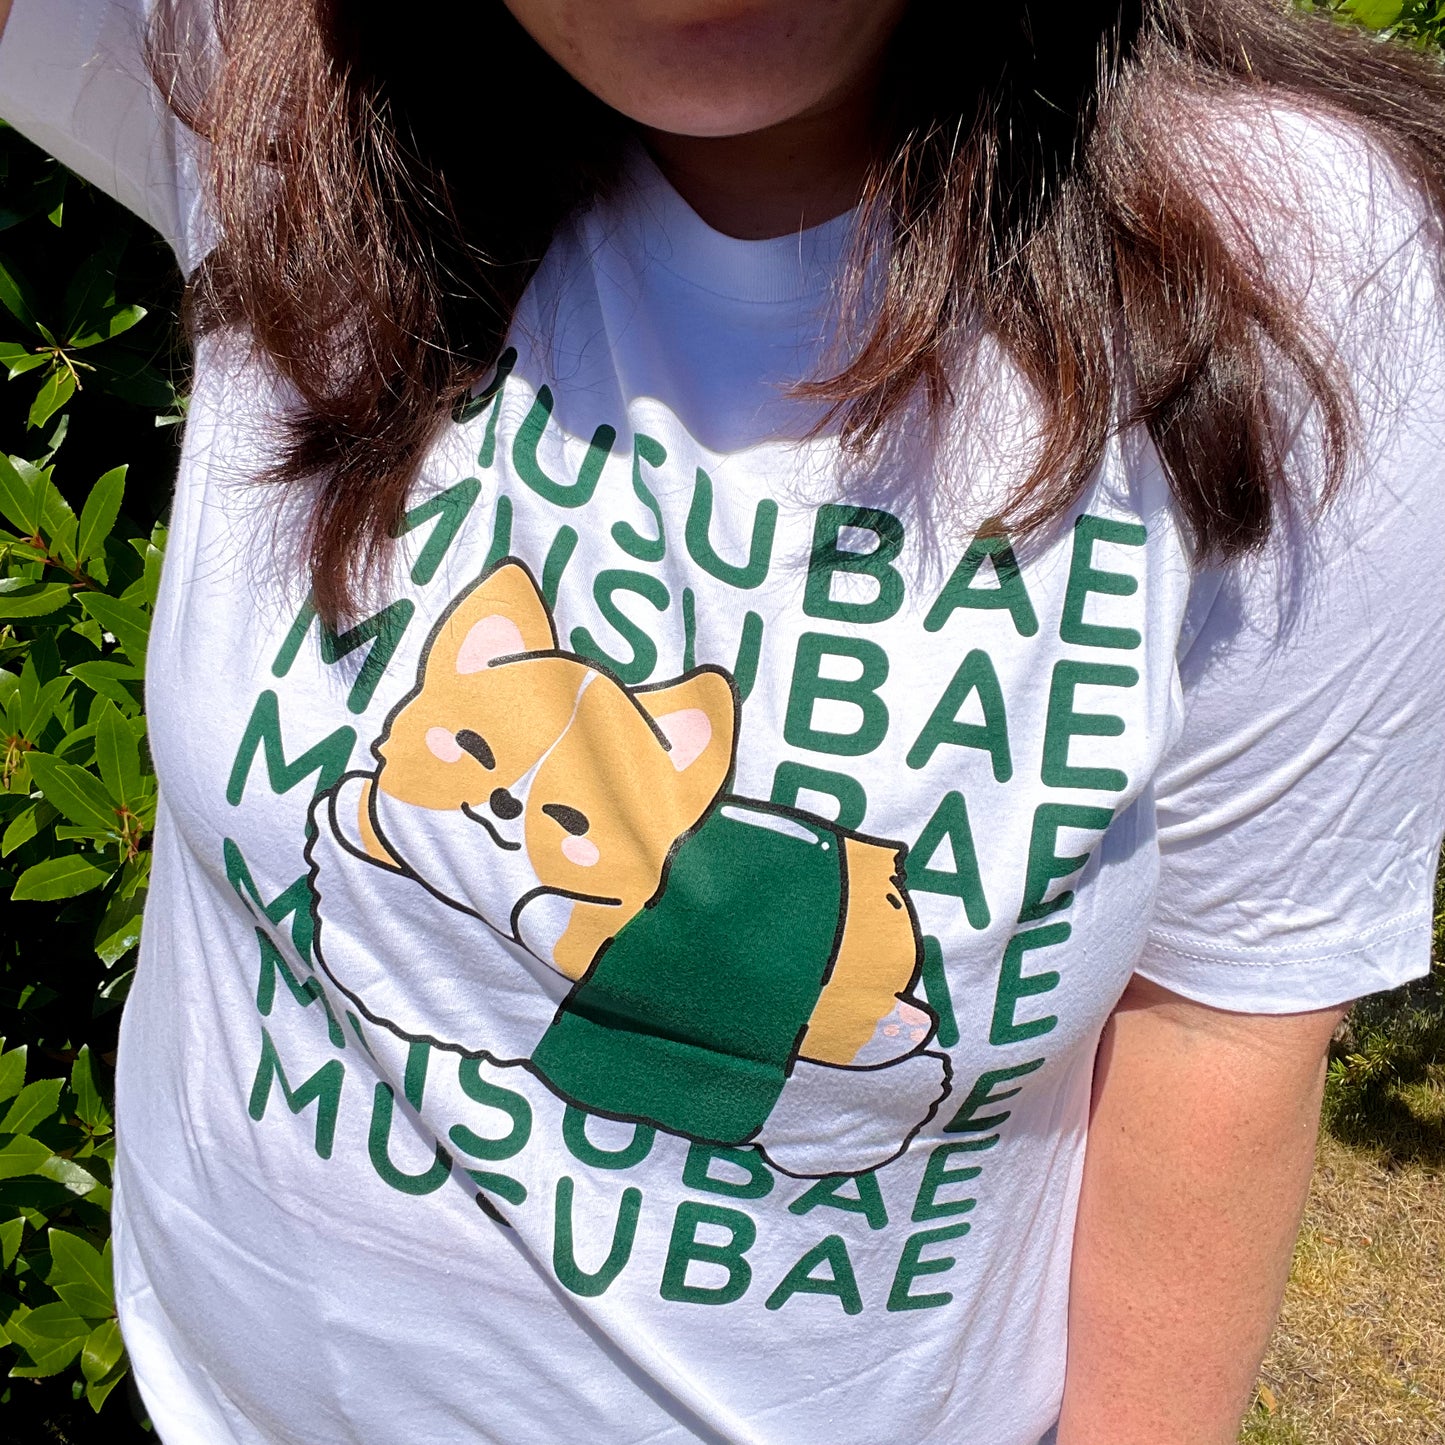 MUSUBAE Tshirt